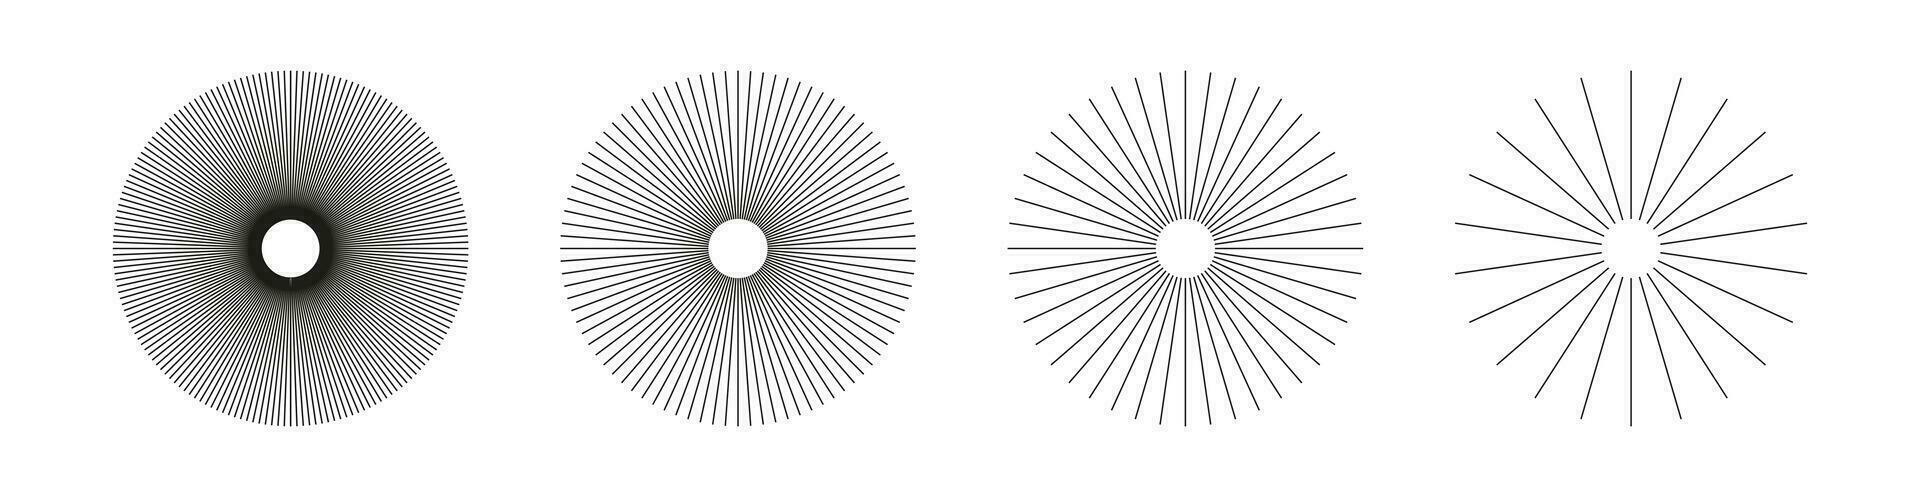 radiaal cirkel lijnen. symbool van zon ster stralen. spaken met uitstralend strepen rooster. reeks van circulaire lijnen elementen. vlak ontwerp element. abstract illusie meetkundig vorm geven aan. vector grafisch illustratie.